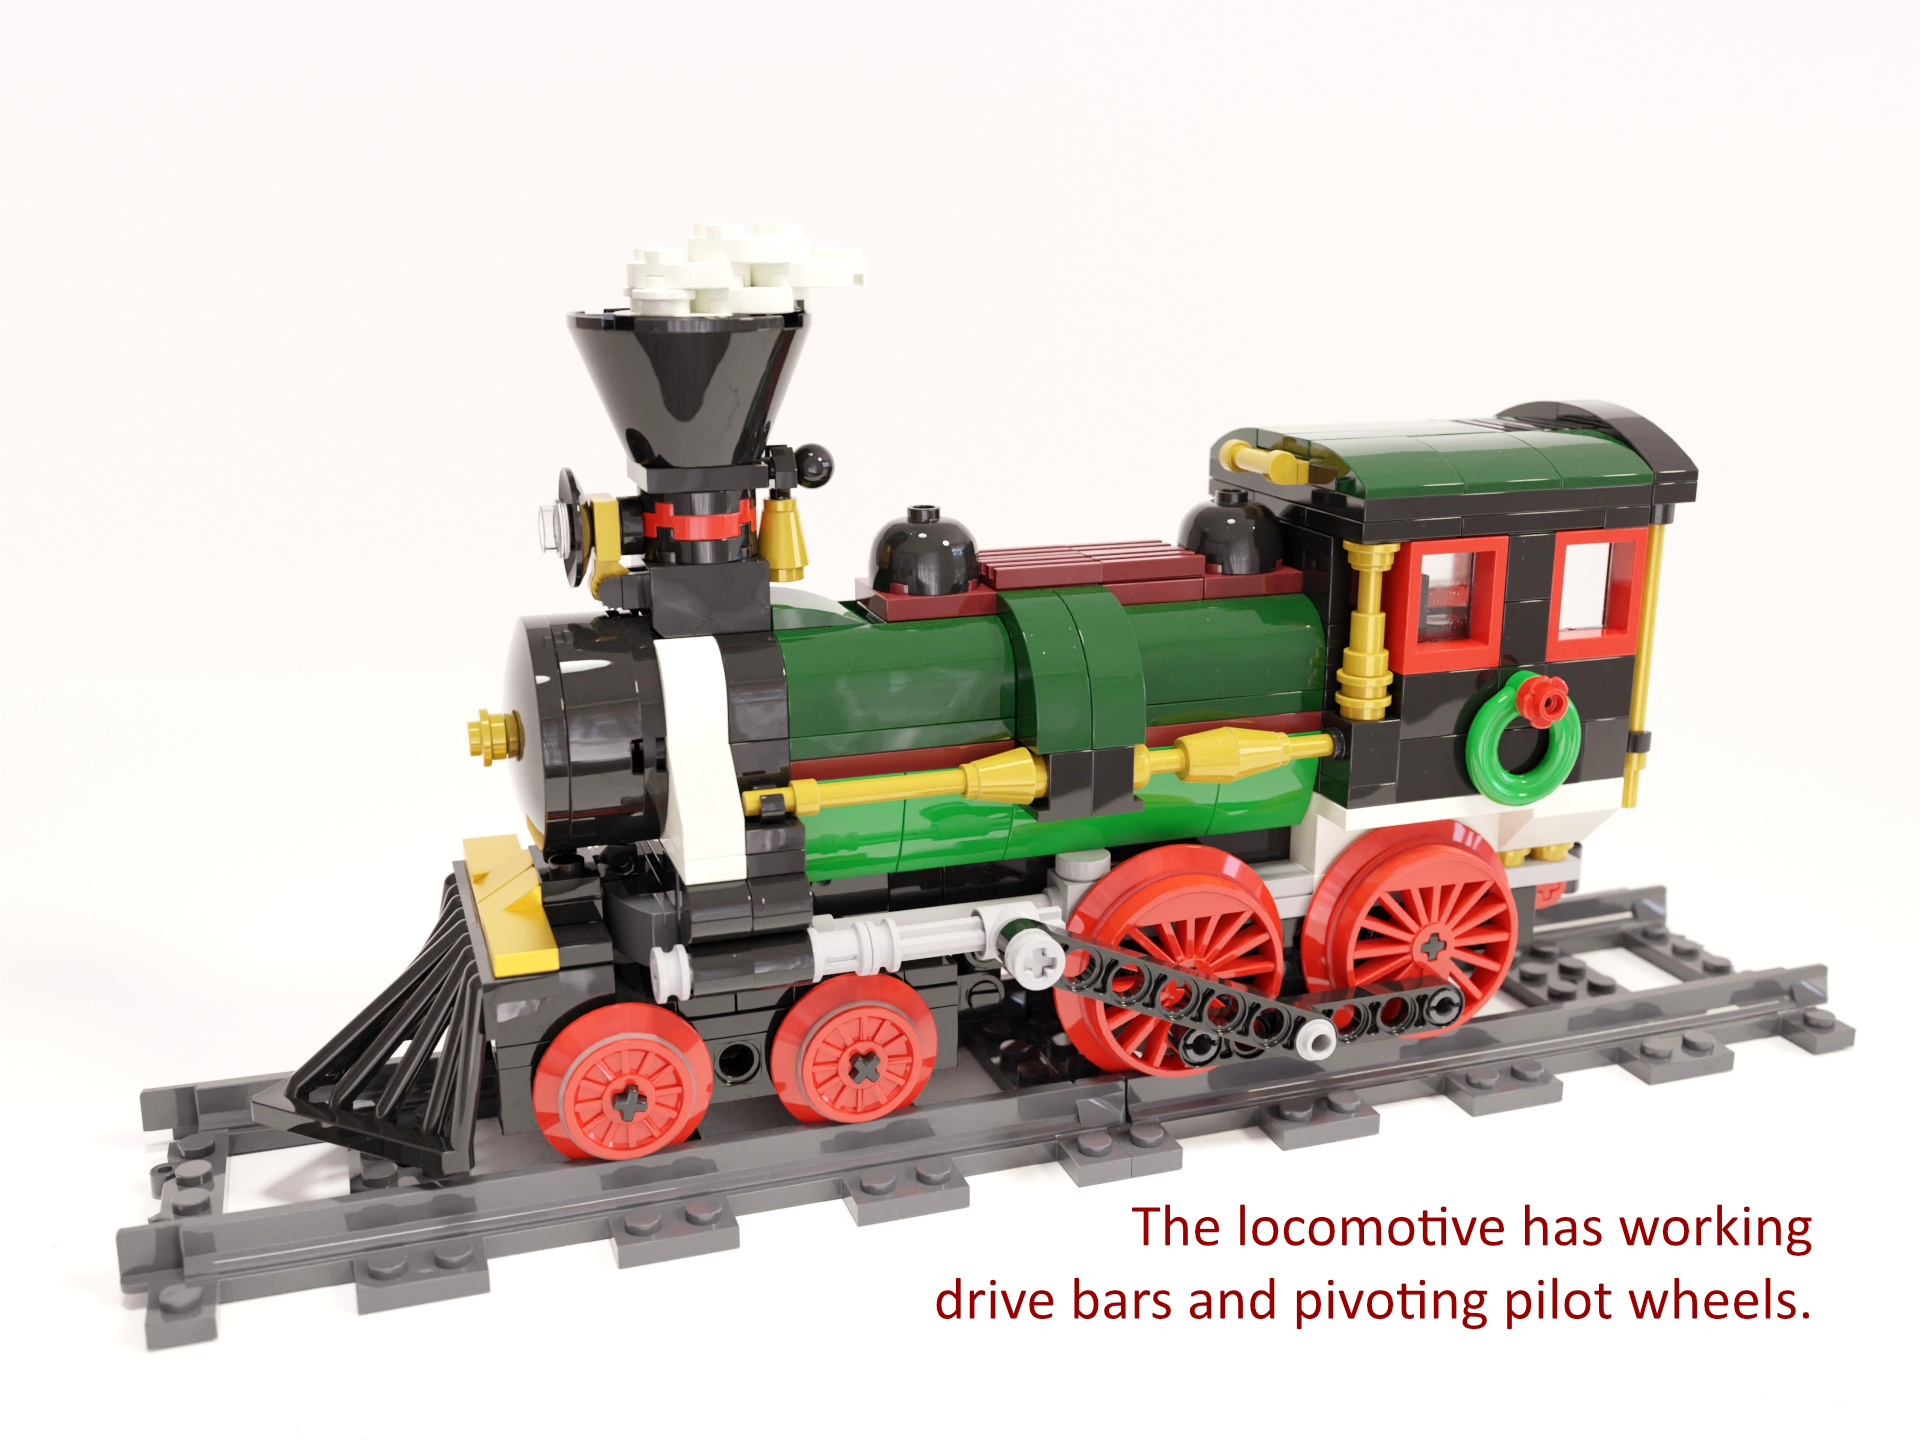 Bild 1: Die Lokomotive verfügt über funktionierende Antriebsstangen und steuernde Piloträder